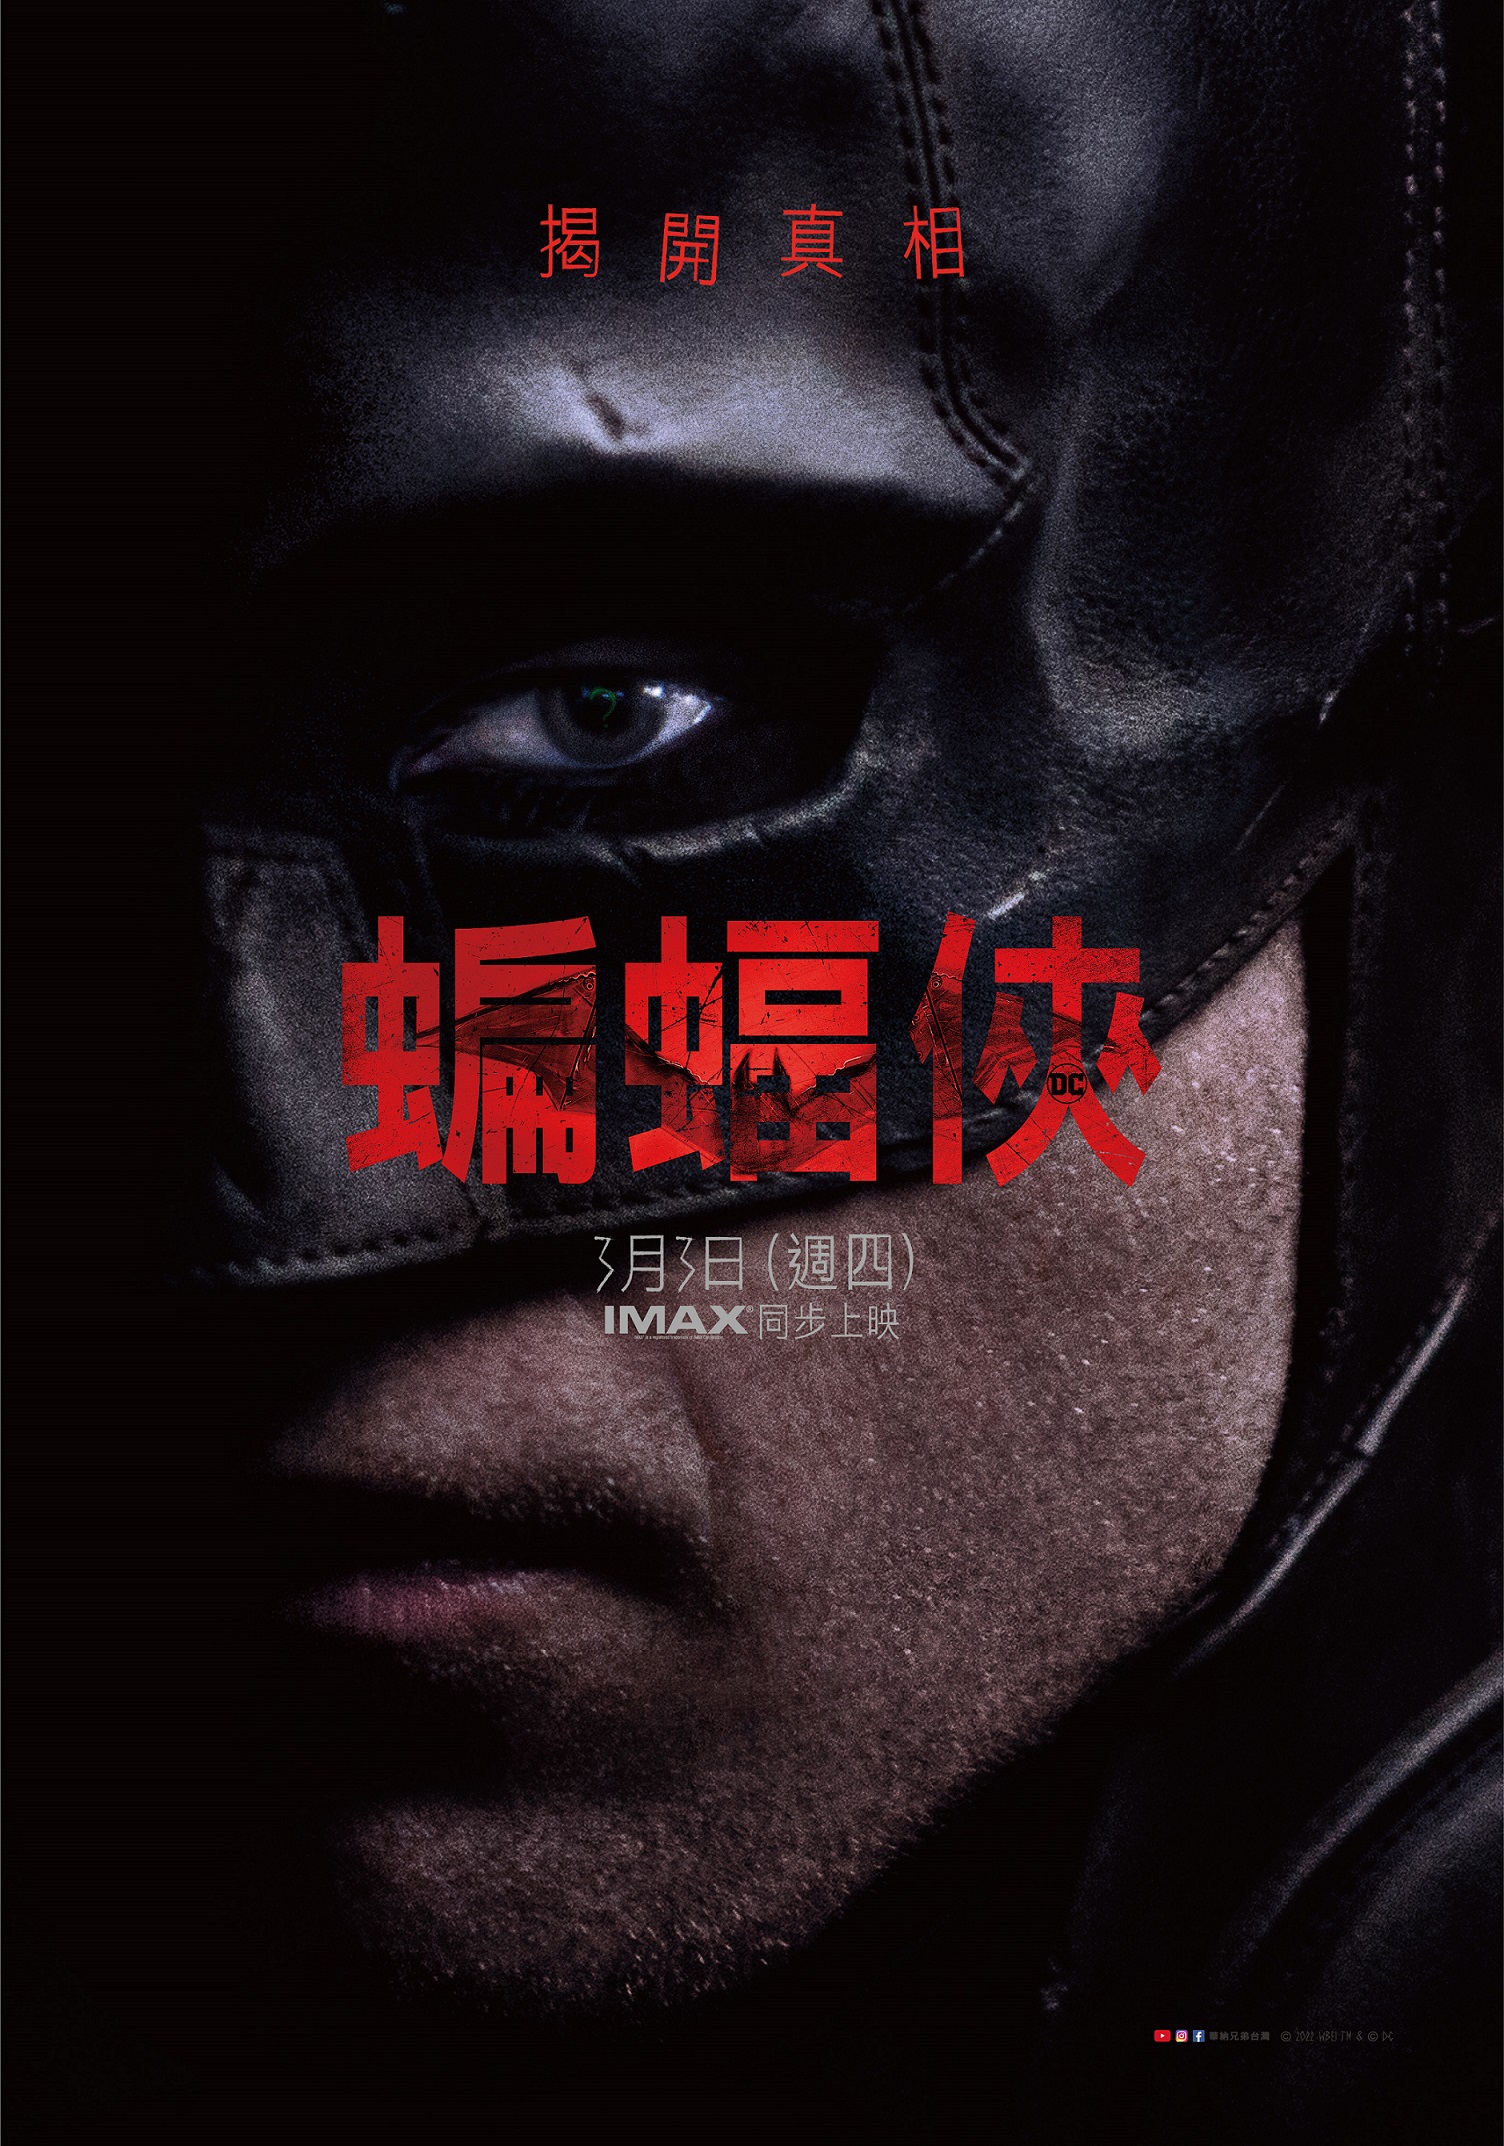 由導演麥特李維斯執導、羅伯派汀森主演的《蝙蝠俠》即將於 3 月 3 日（週四）在台灣上映，故事敘述布魯斯韋恩兩年來化身為蝙蝠俠，不僅在罪犯腦中植入恐懼的種子，也在其他市民心中建立了復仇使者的形象，同時讓自己牽扯進高譚市的陰暗面中。在電影上映前，華納兄弟 2 月 10日（週四）至 14 日（週一）將在台北國際動漫節呈現貪腐弊端的高譚市，讓粉絲搶先跟著蝙蝠俠這位「世上最偉大的偵探」展開對地下社會的調查，揭開真相。